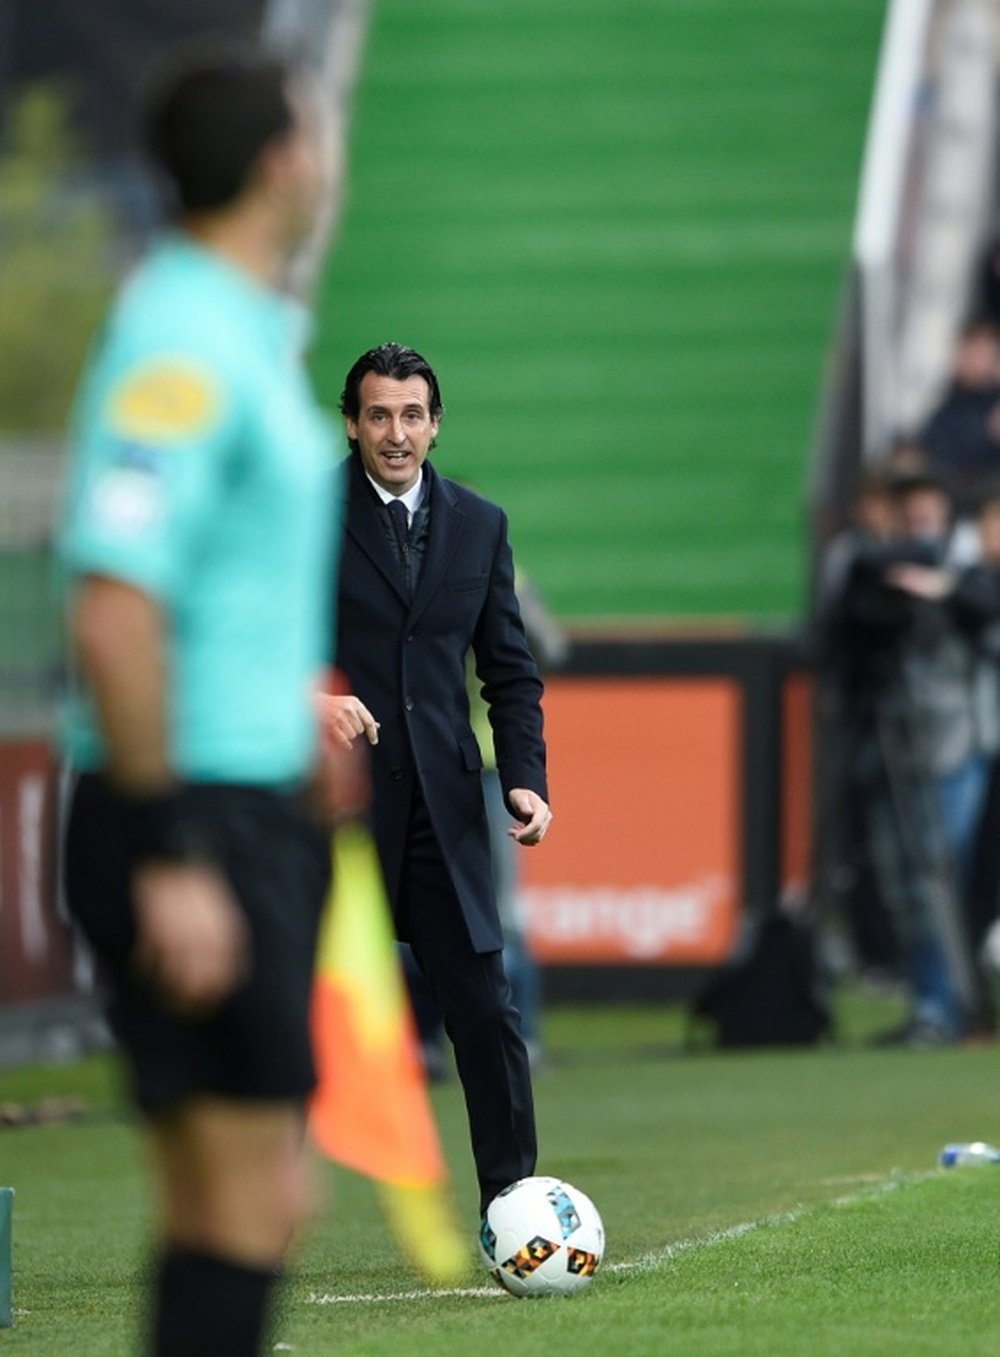 L'entraîneur du PSG Unai Emery observe le match face à Metz à Saint-Symphorien. AFP